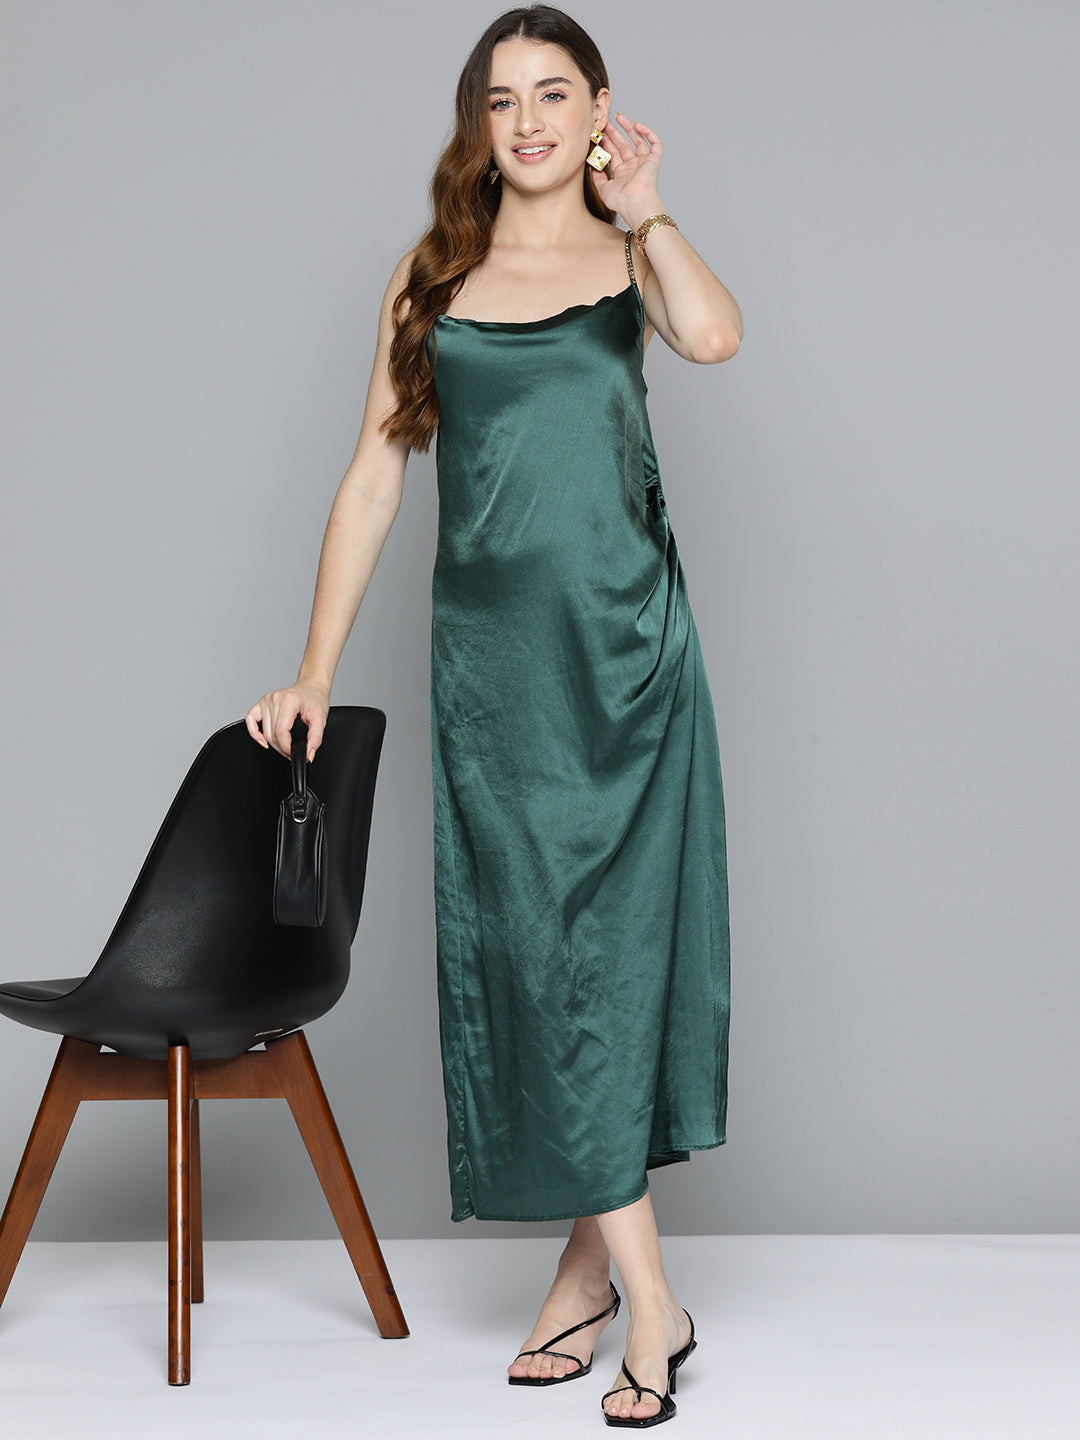 Green Cowl Neckline Satin Dress